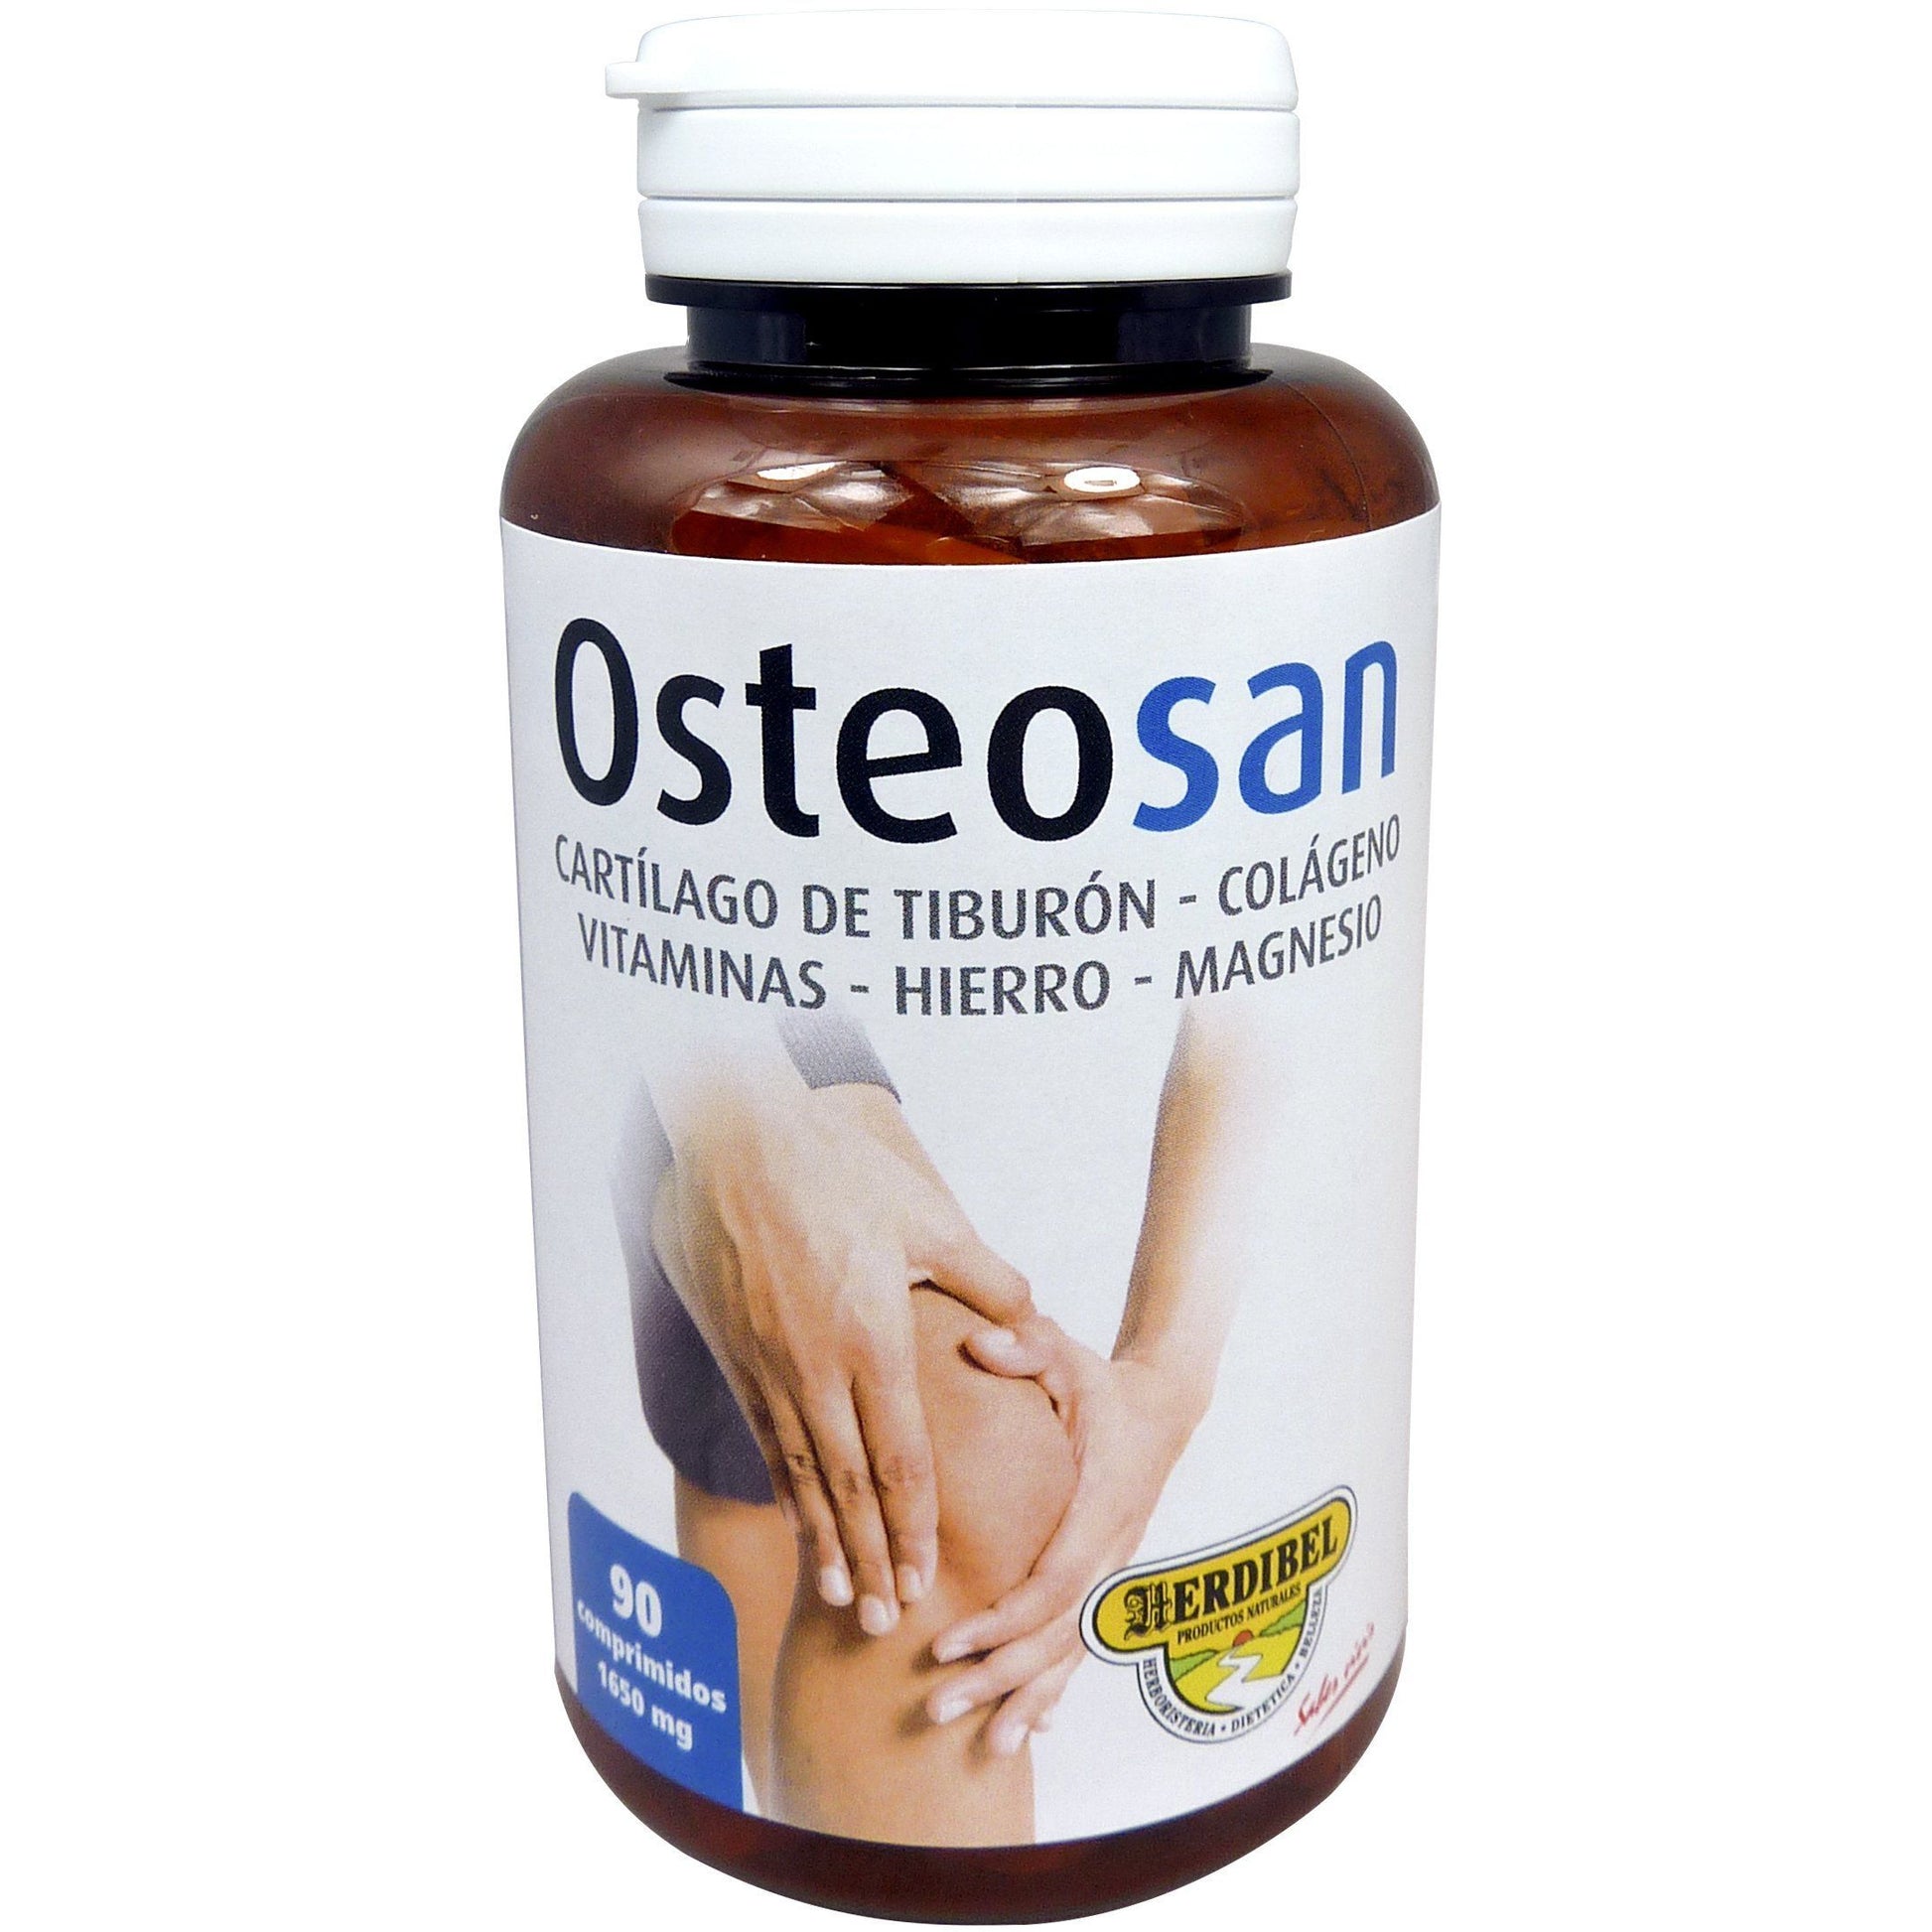 Osteosan 90 Comprimidos | Herdibel - Dietetica Ferrer